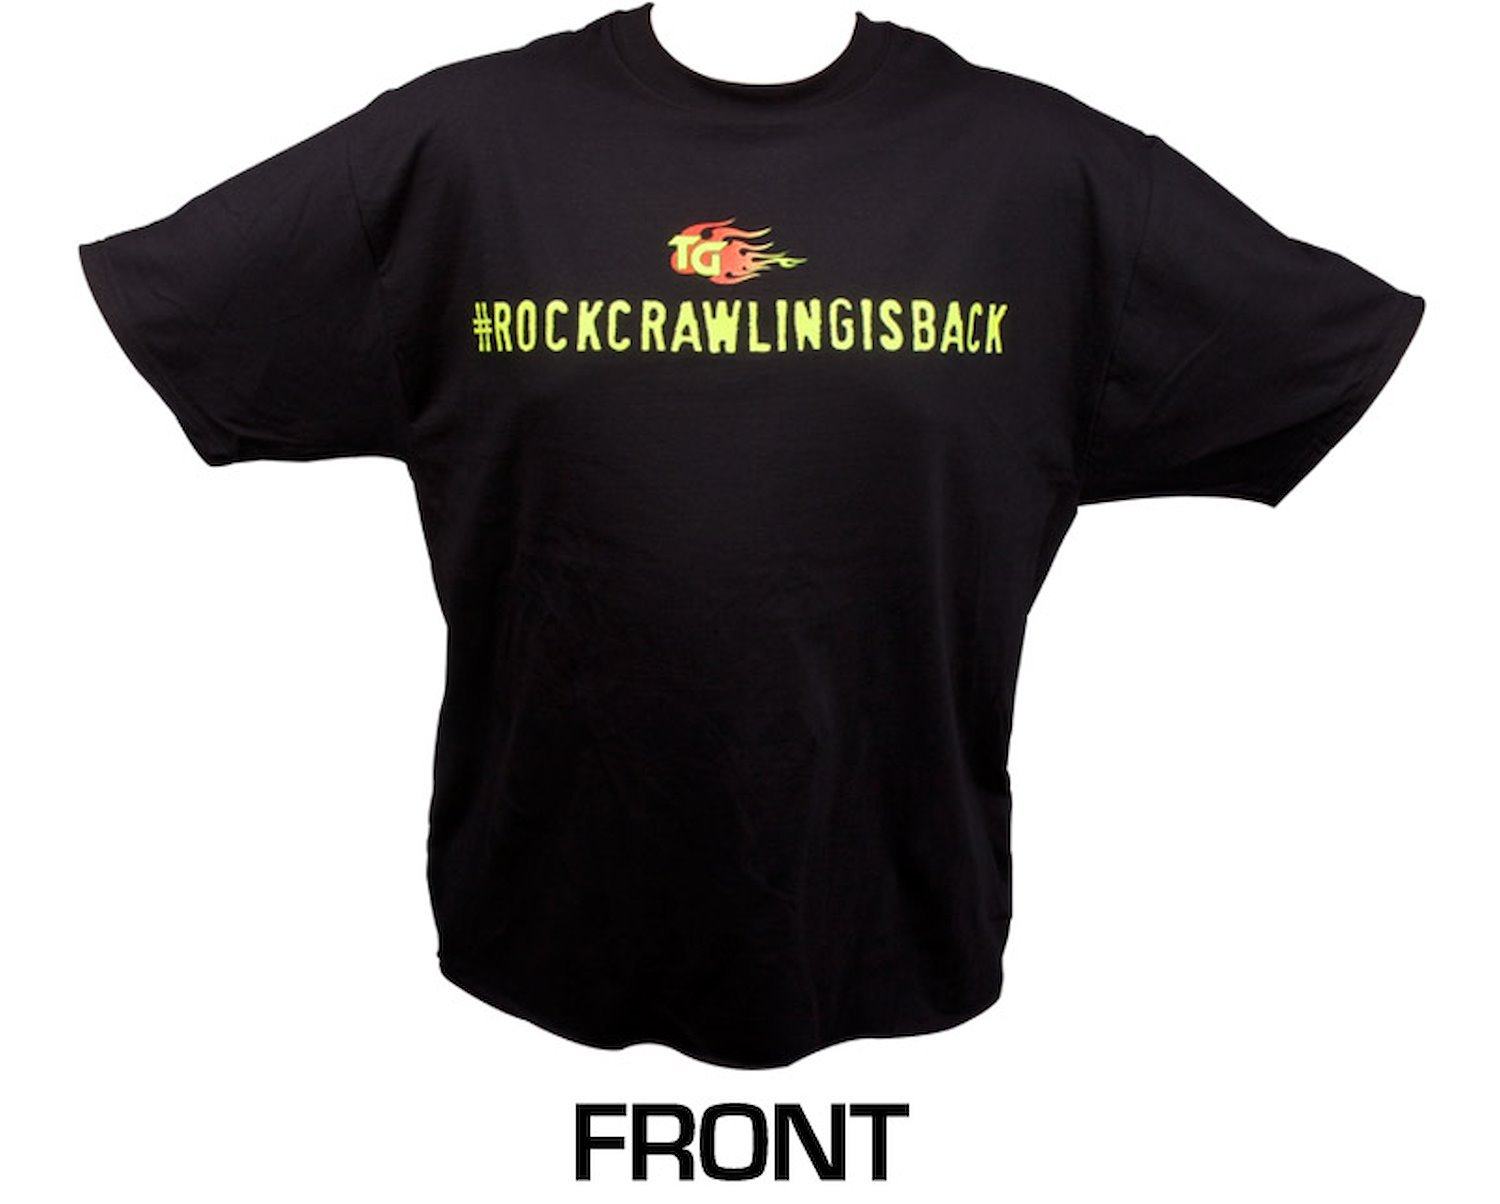 Short Sleeved Black Shirt #rockcrawlingisback Large